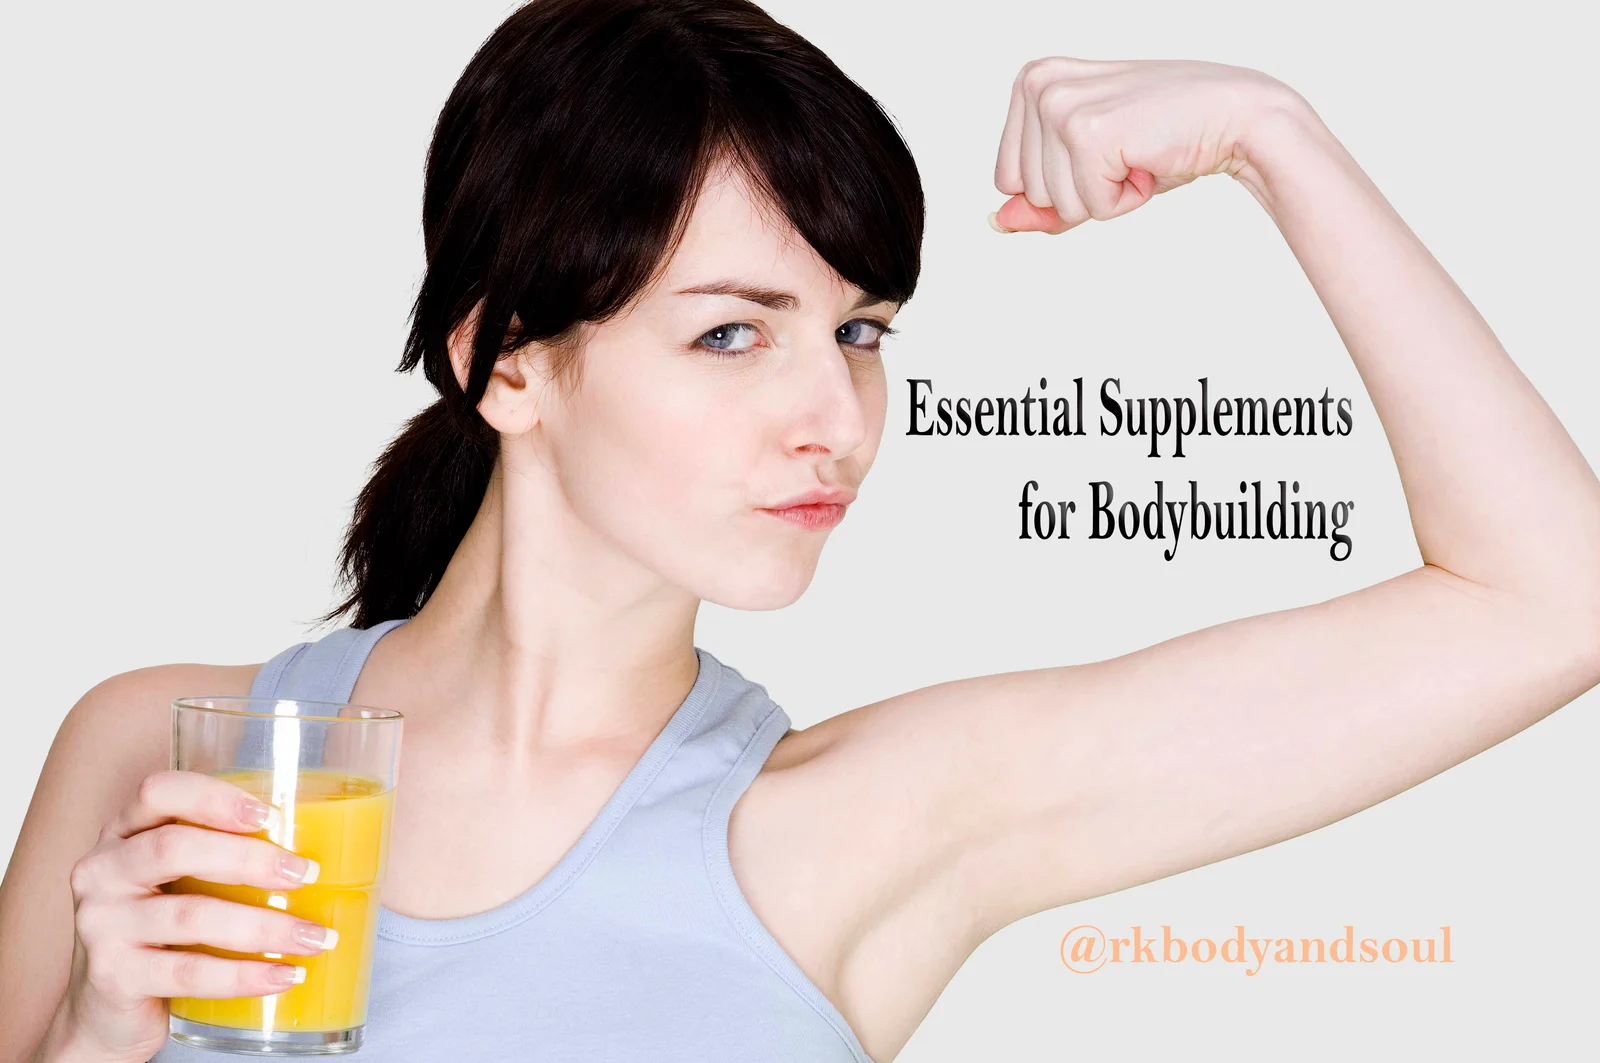 rkbodyandsoul essential supplements